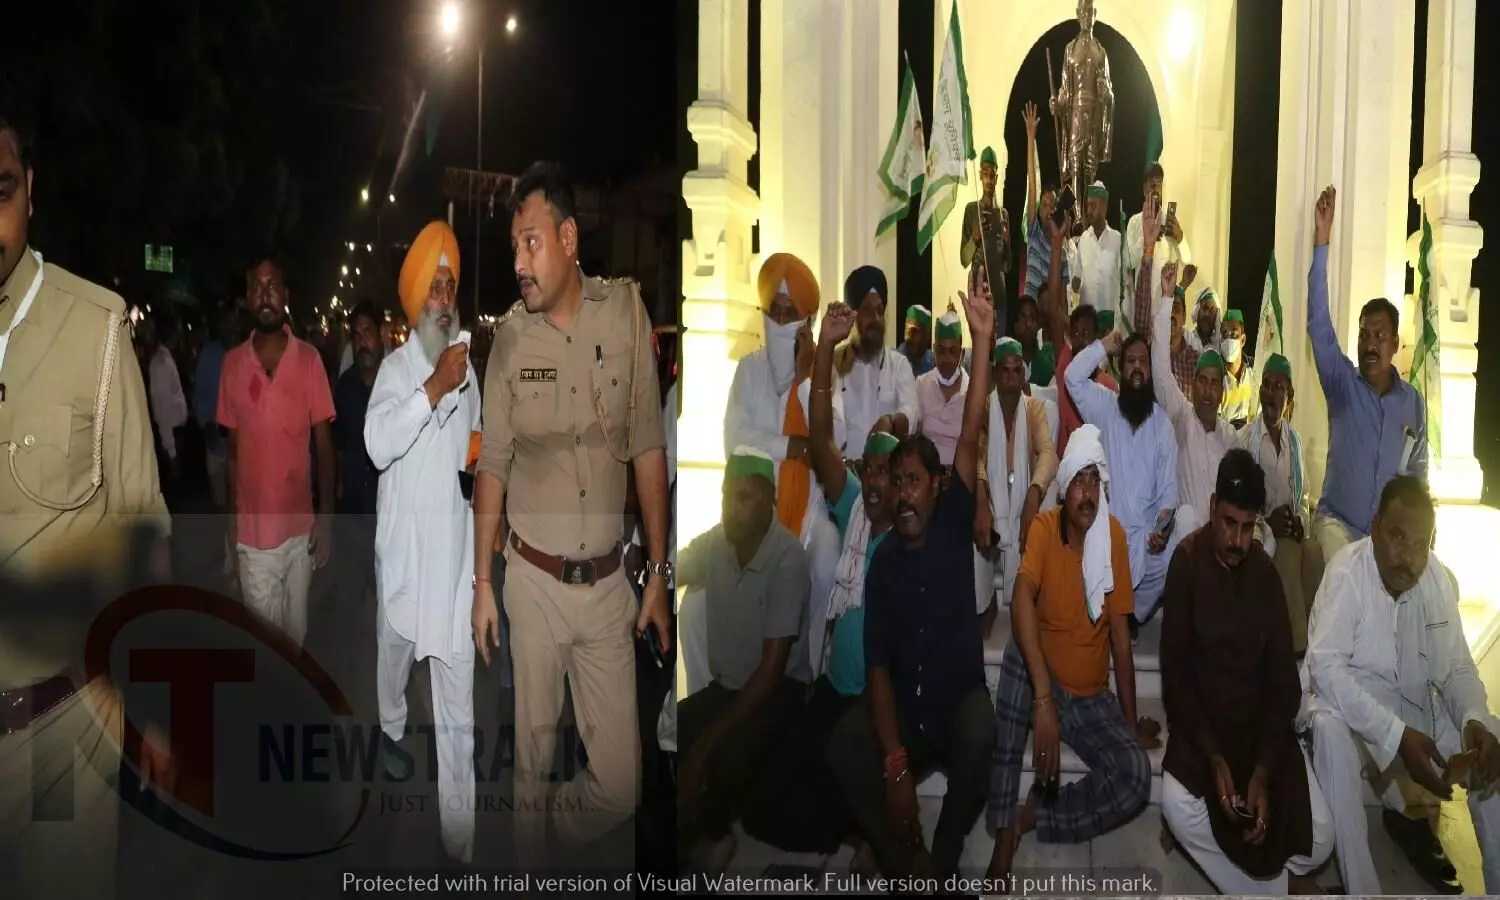 Lucknow News : गांधी प्रतिमा पर प्रदर्शन करते भारतीय किसान यूनियन के कार्यकर्ता, प्रधानमंत्री और गृह मंत्री के पुतला फूंकने वाले किसानों की रिहाई की मांग